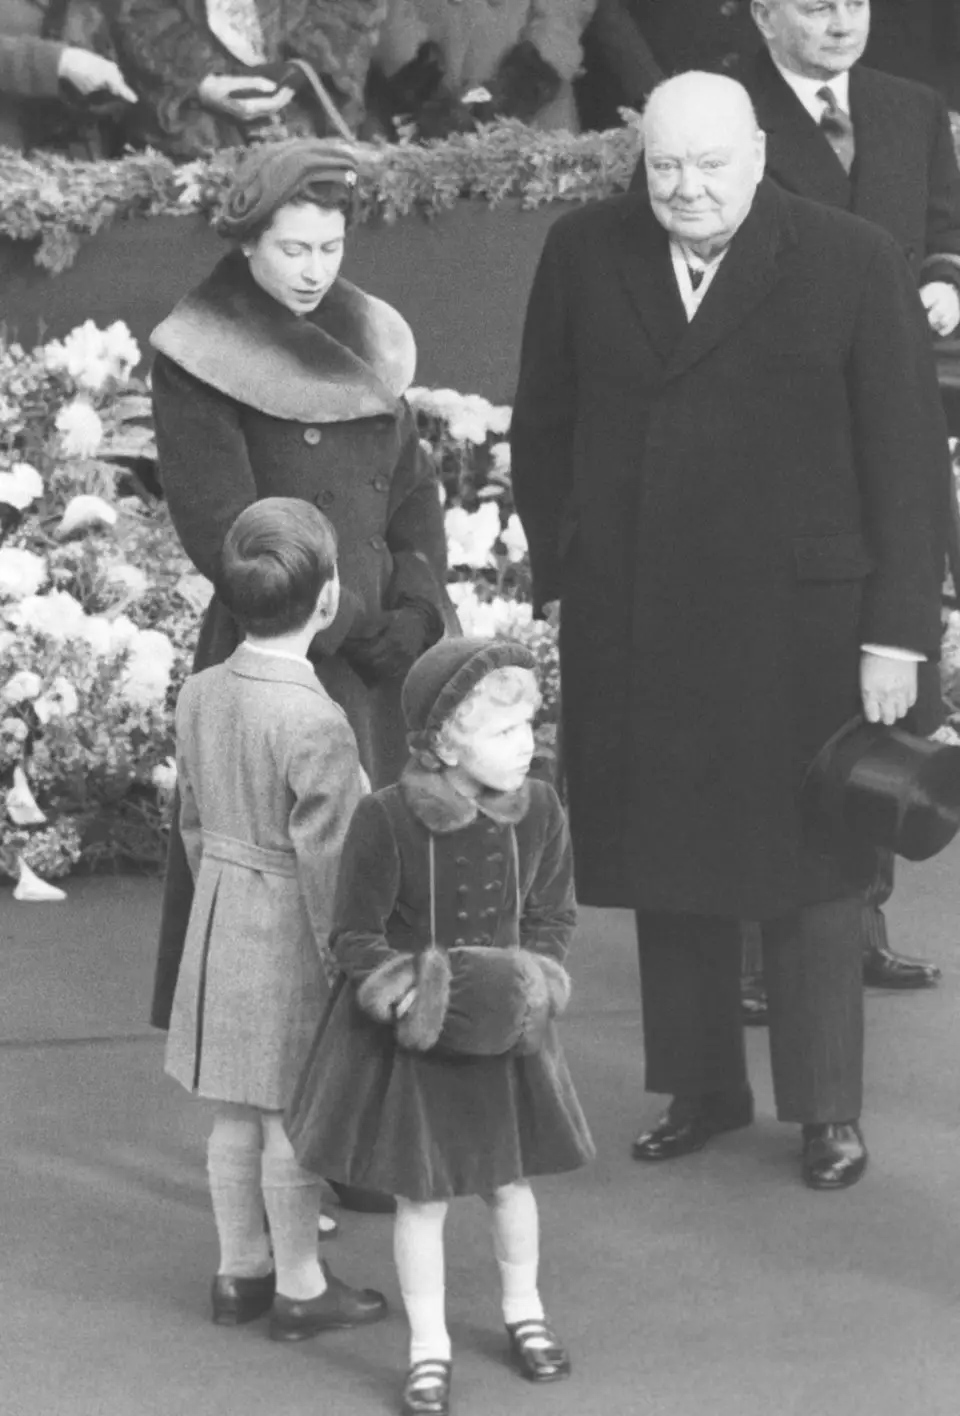 พ.ศ. 2497/ค.ศ. 1954: ในระหว่างที่ขึ้นครองราชย์ปีแรกในฐานะ "สมเด็จพระราชินีนาถเอลิซาเบธที่ 2" พระองค์ได้พบปะกับรัฐมนตรีกระทรวงต่าง ๆ ทั้งหมด 15 คนด้วยกัน